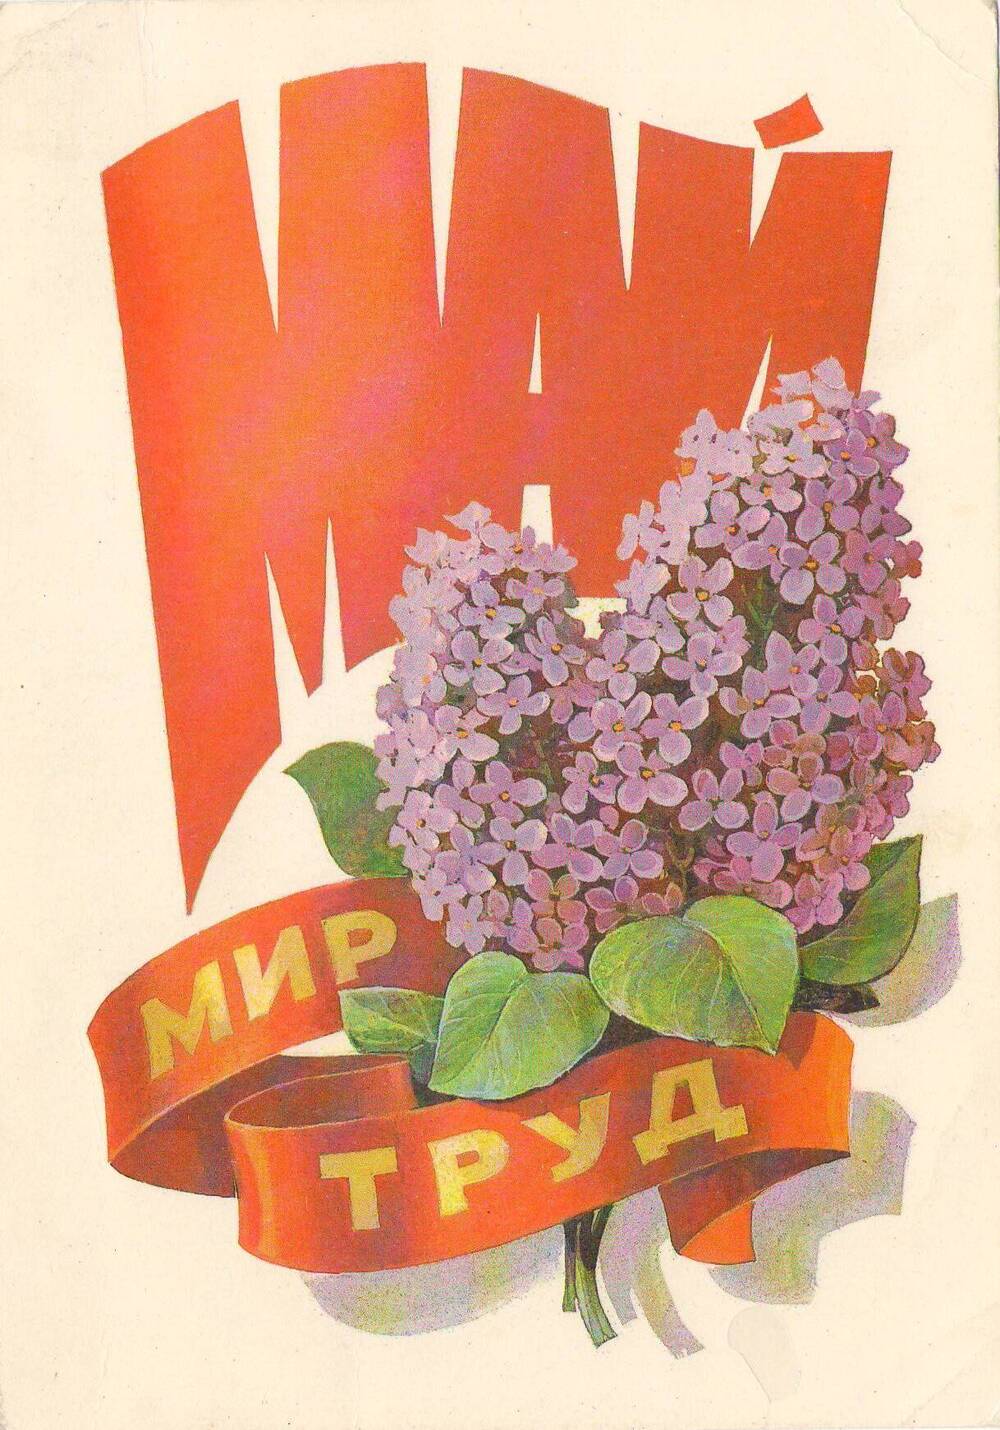 Открытка цветная с надписью «Май Мир Труд». Министерство связи СССР 1980 год, художник Л. Кузнецов